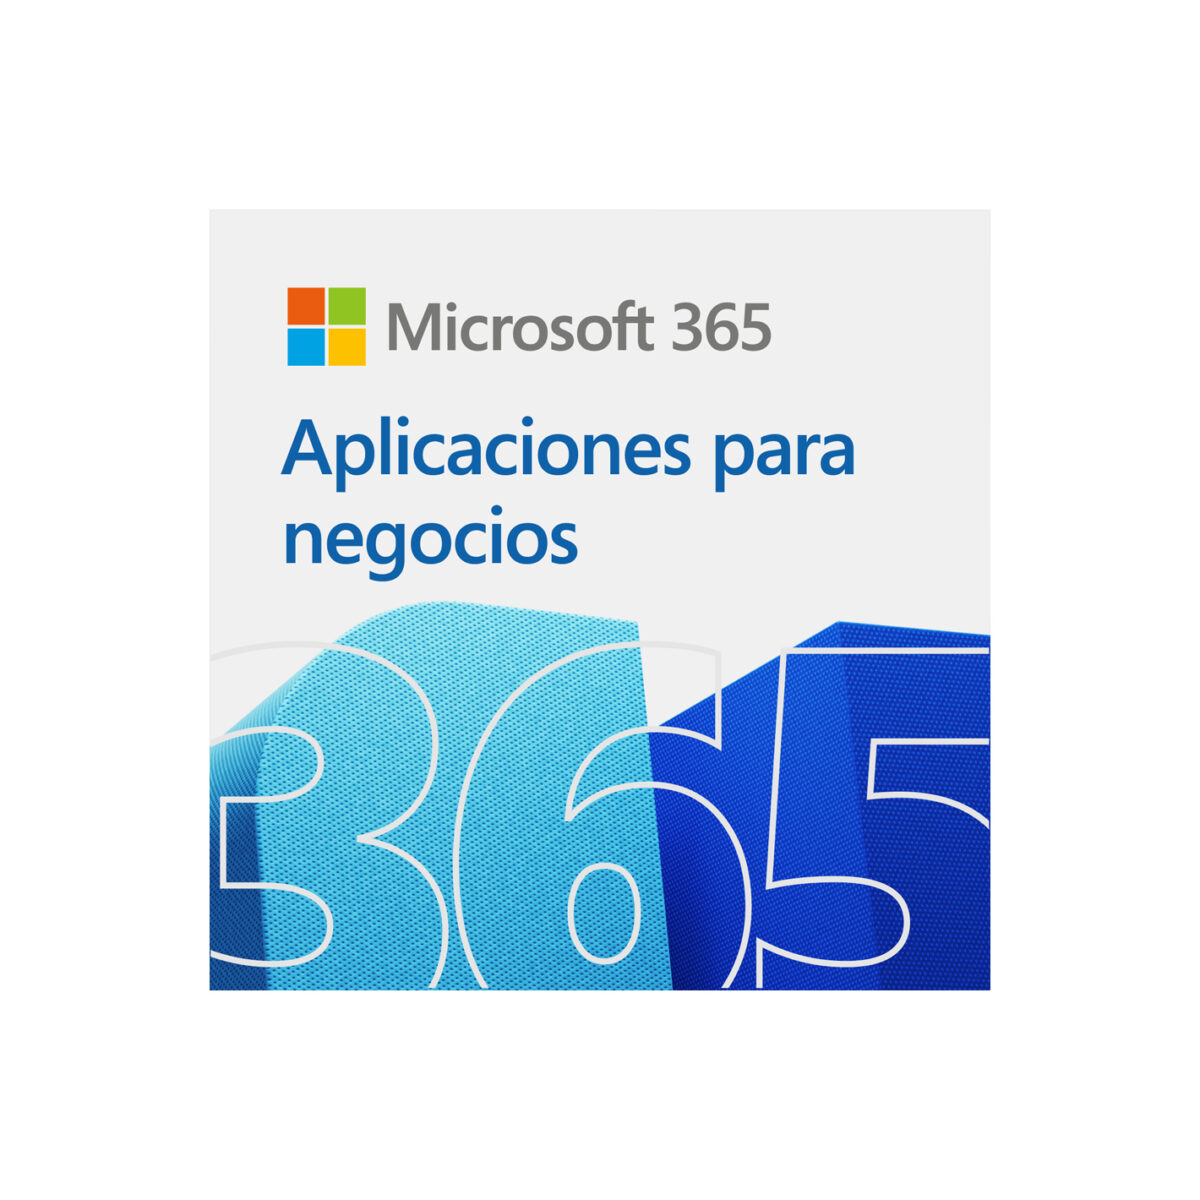 Microsoft 365 Aplicaciones para negocios